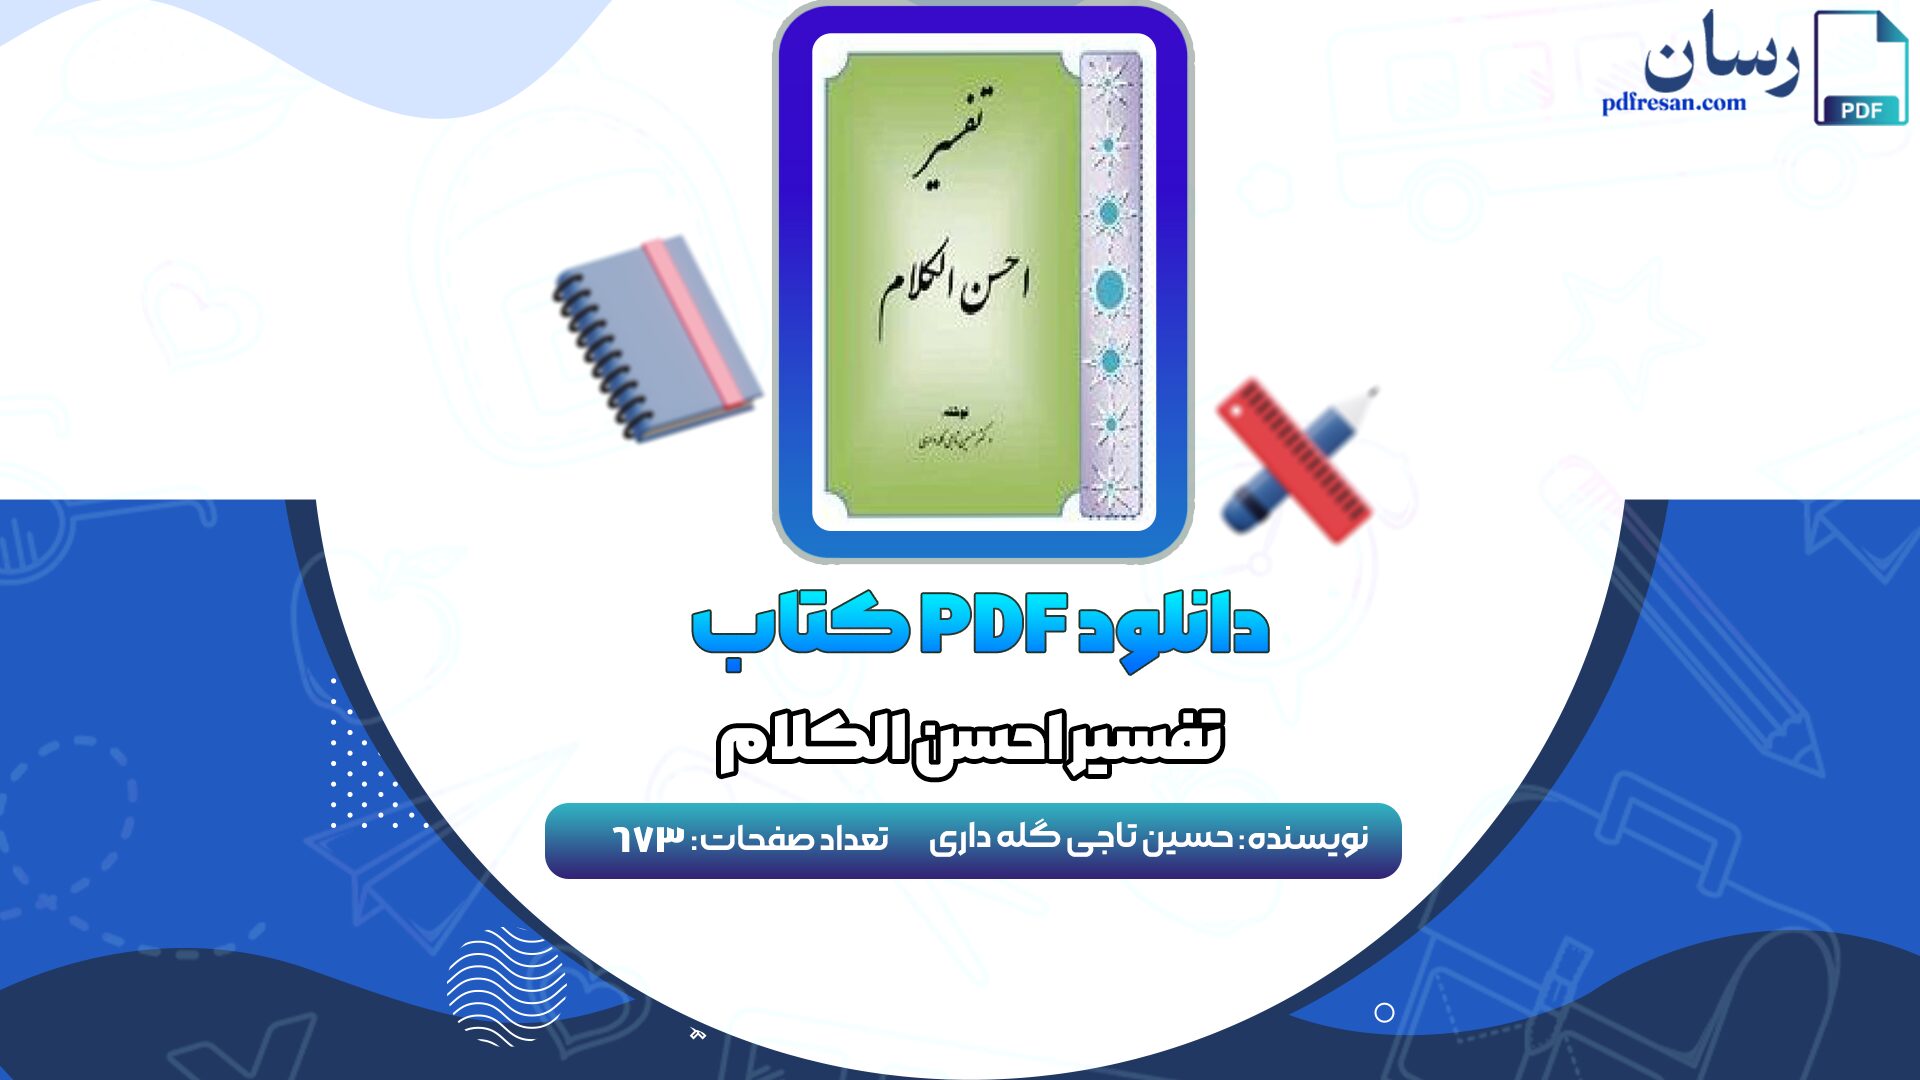 دانلود کتاب تفسیر احسن الکلام حسین تاجی گله داری PDF